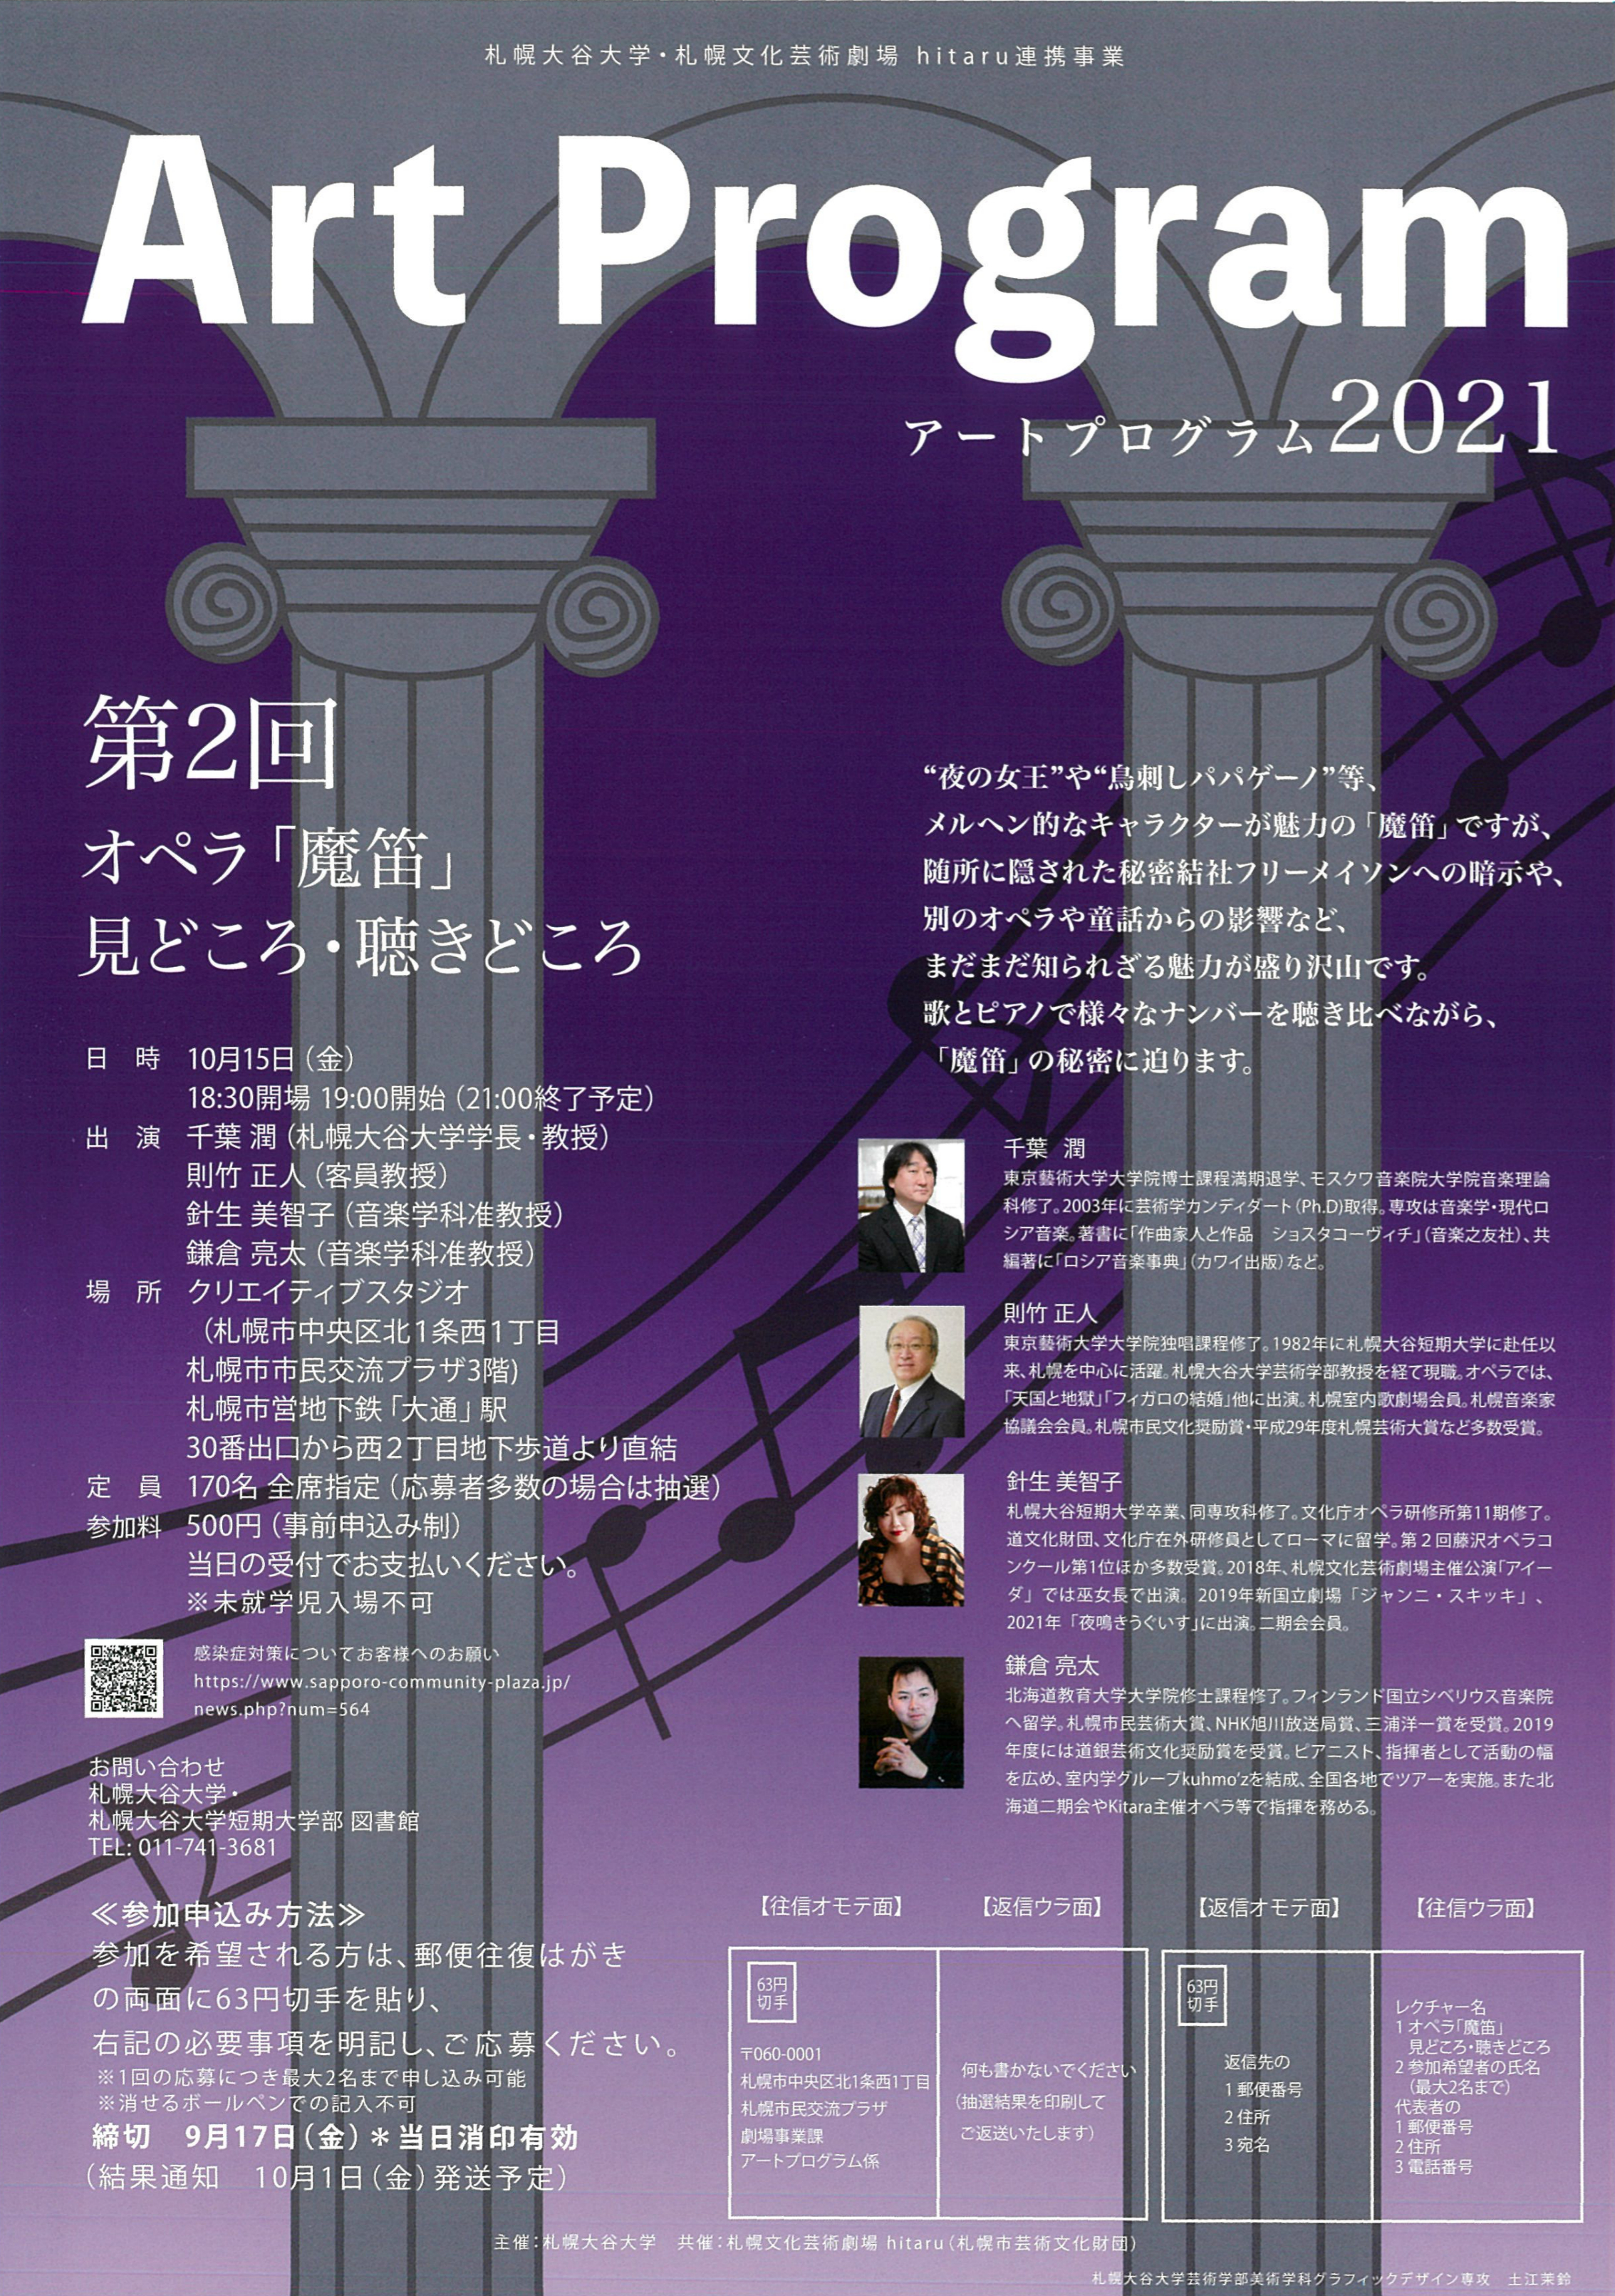 札幌大谷大学・札幌文化芸術劇場 hitaru連携事業  アートプログラム2021　第２回 オペラ「魔笛」見どころ・聴きどころイメージ